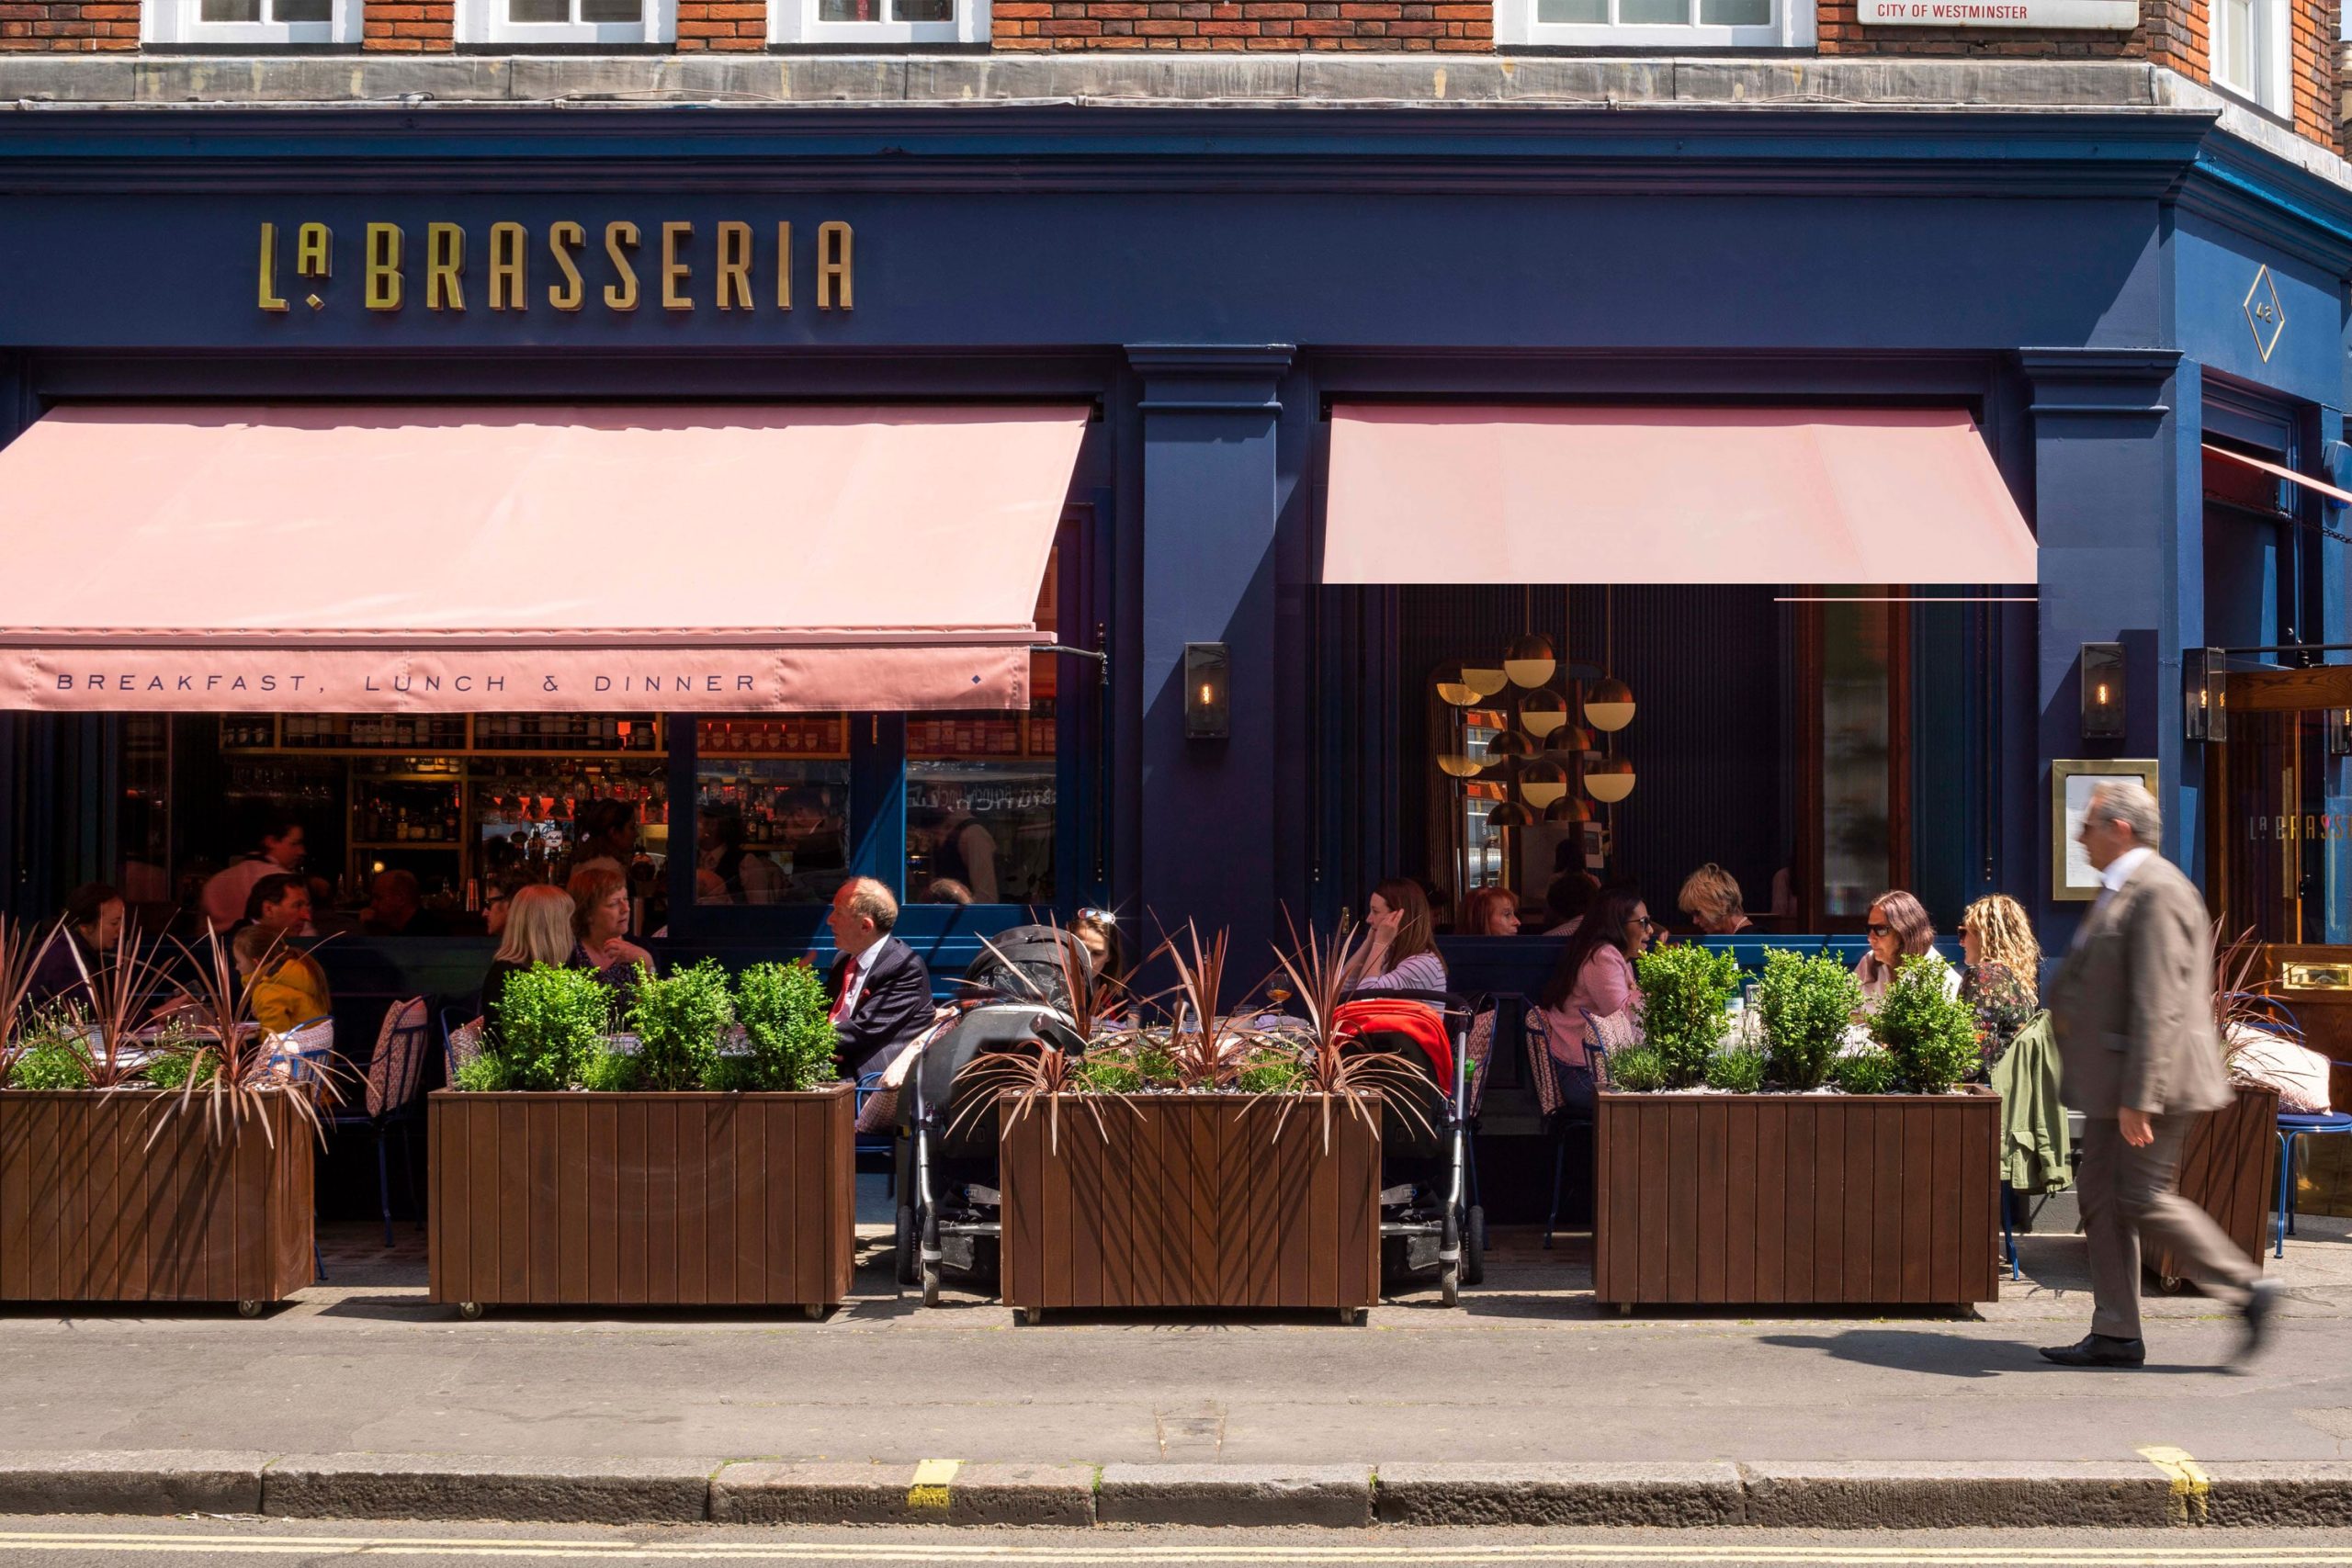 La Brasseria restaurant in Marylebone – EXTERIOR SIGNAGE